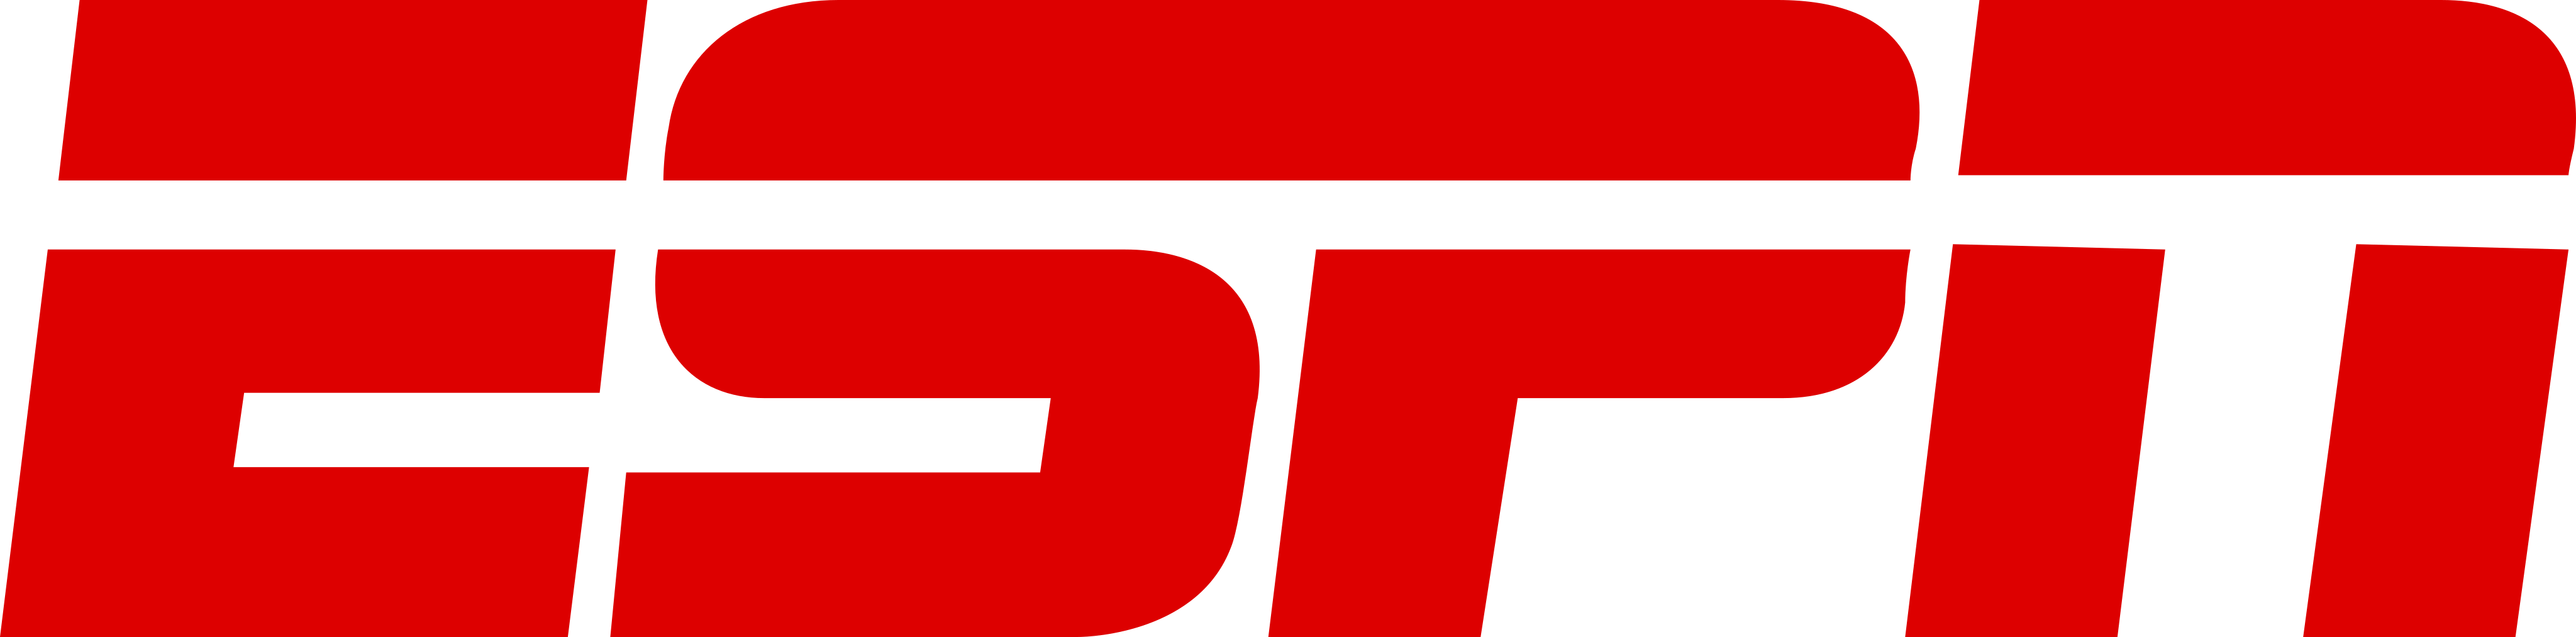 espn logo 5 - ESPN Logo